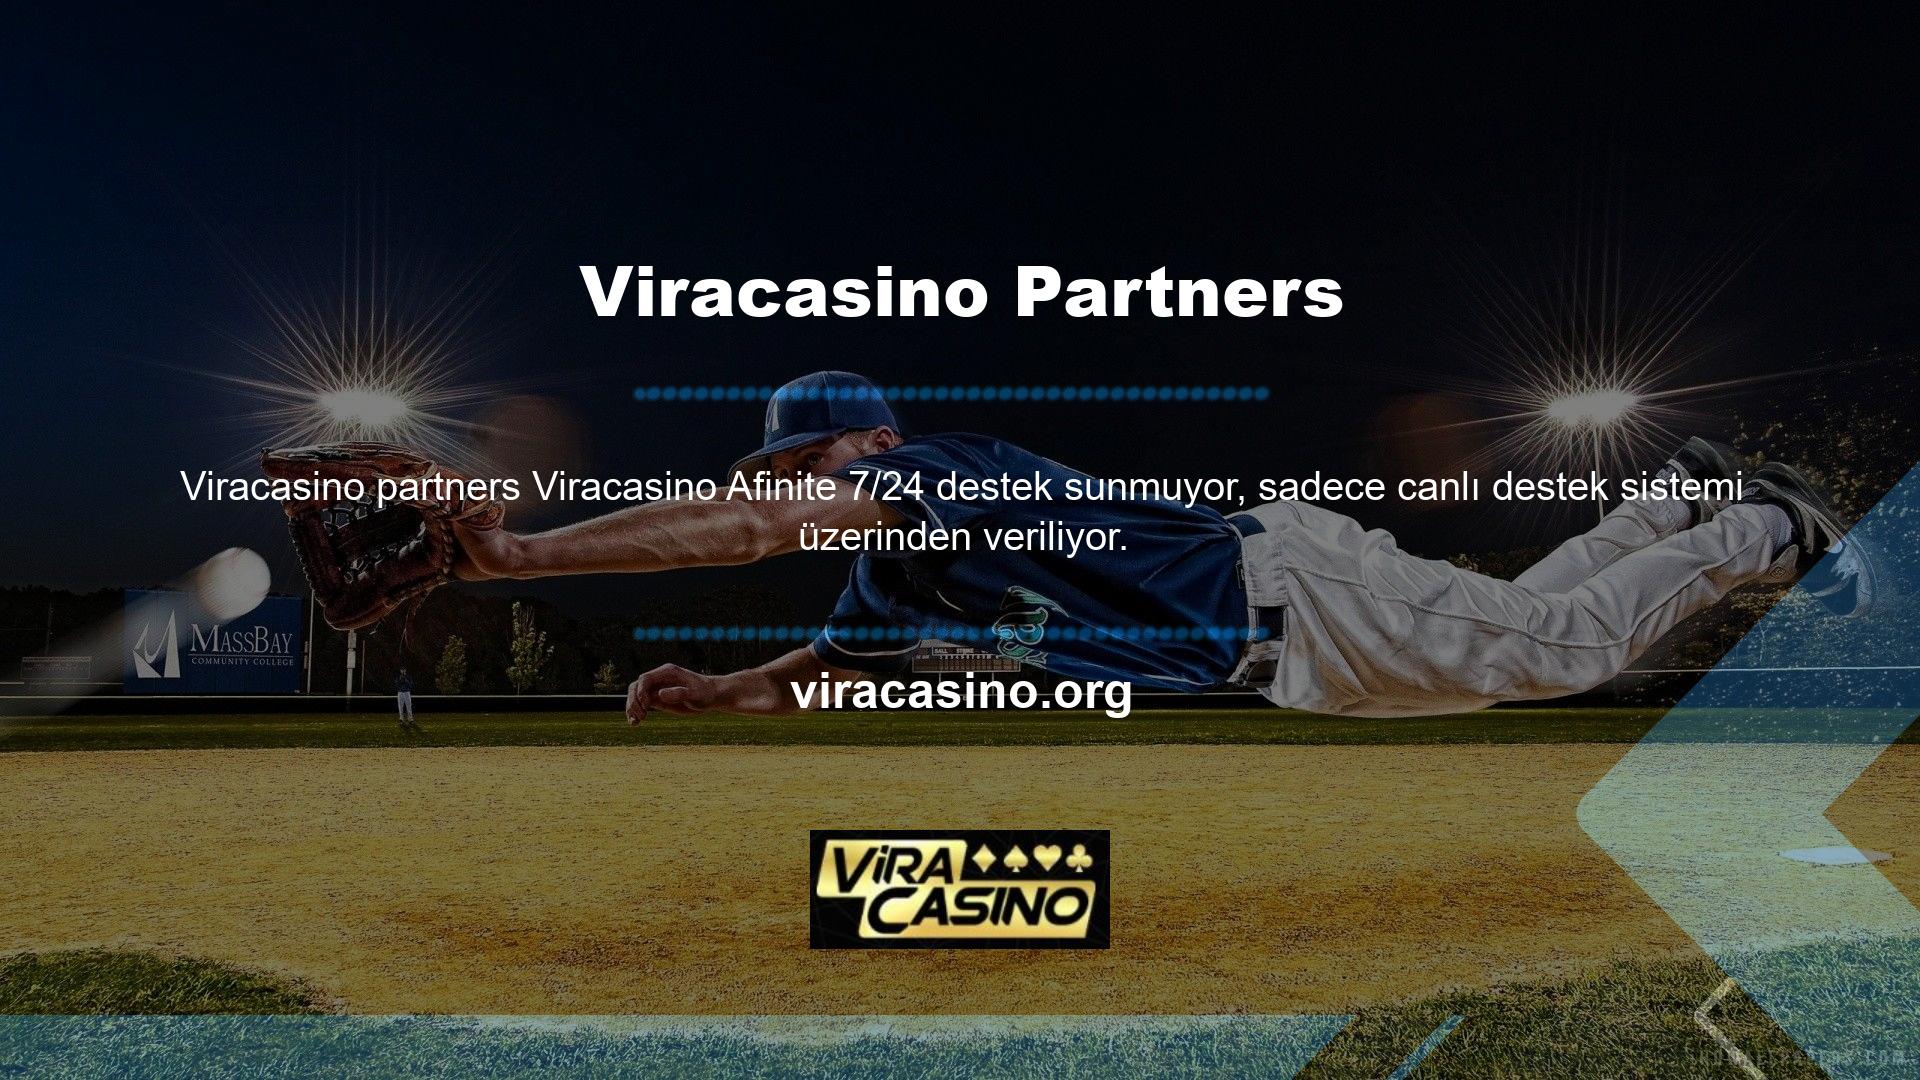 Bu, web sitemizdeki Viracasino İş Ortağı Yardım Hattı'ndan cep telefonunuzdan sürekli destek almanızı sağlar